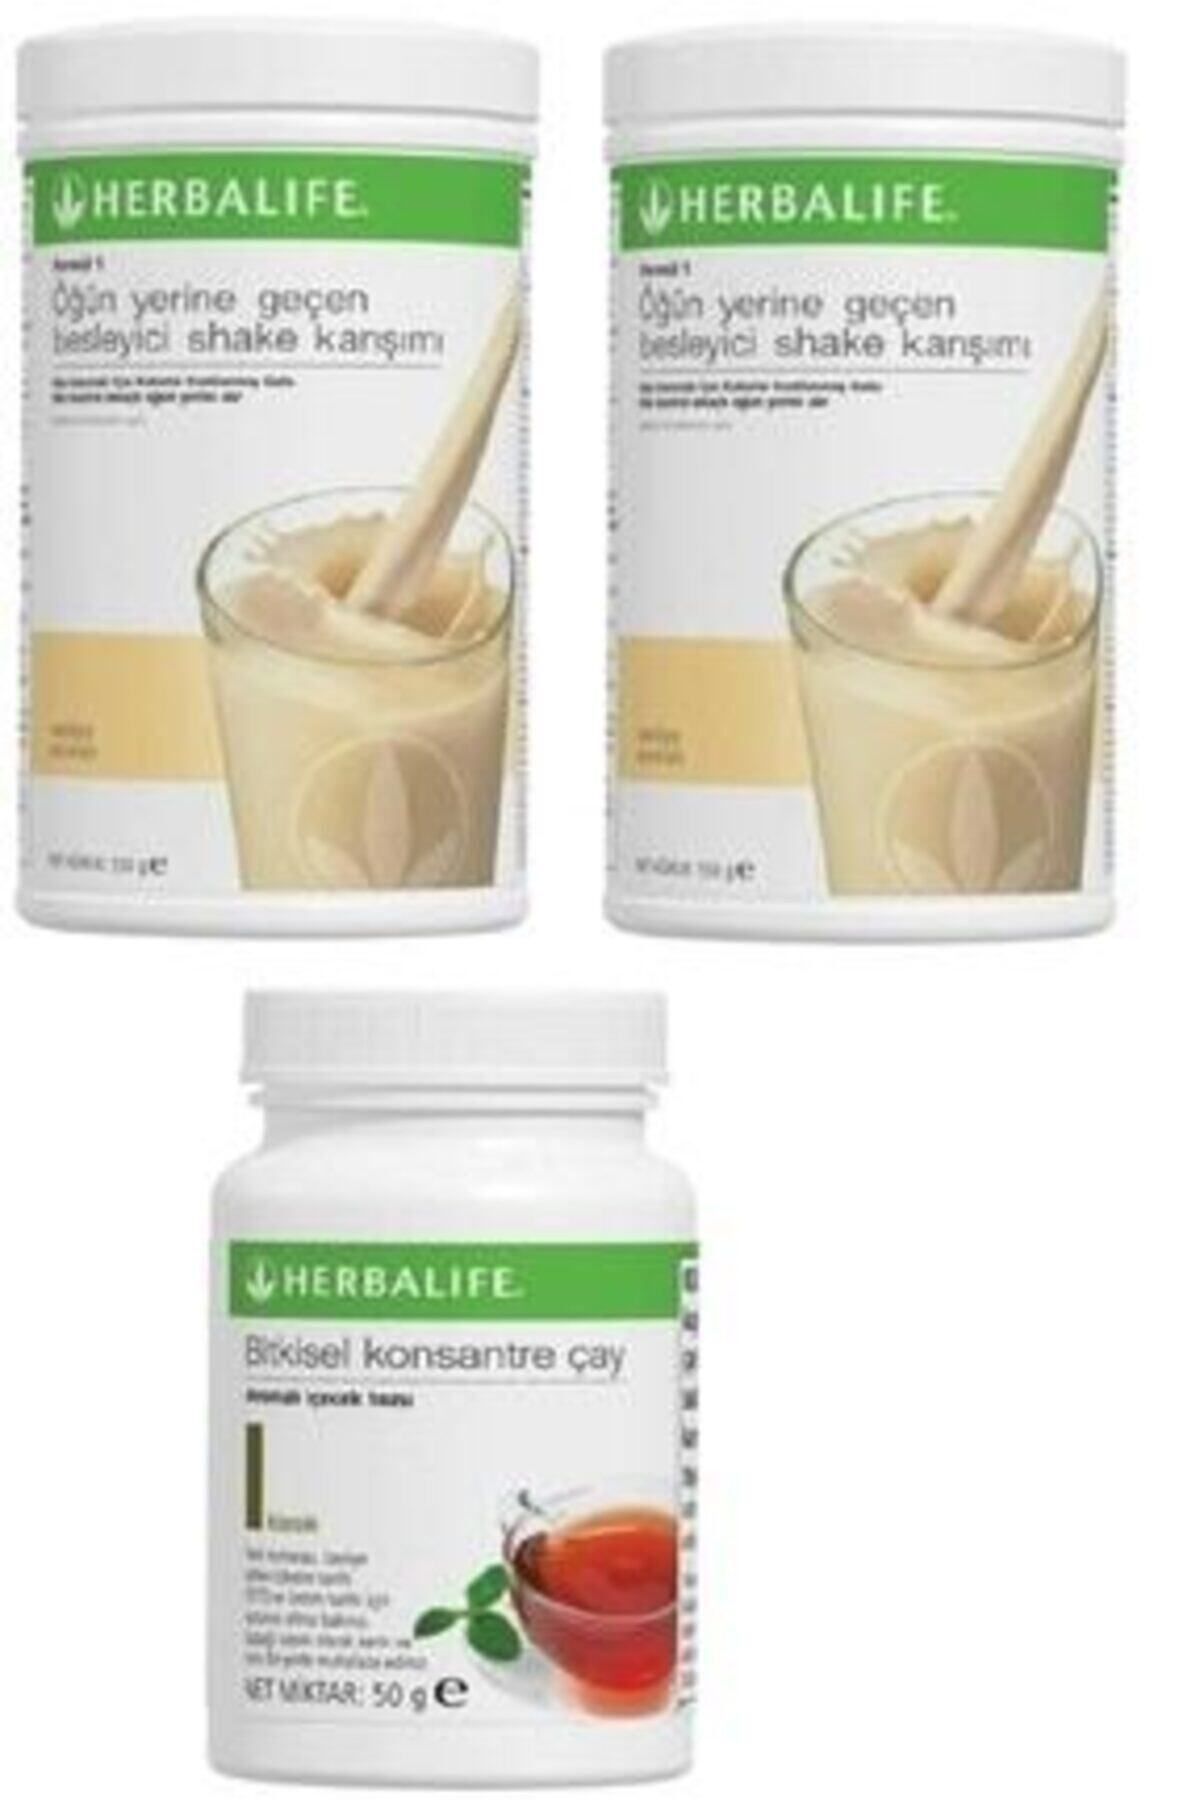 Herbalife Formül 1 Öğün Yerine Geçen Besleyici Shake Karışımı Vanilya Aromalı + Bitkisel Konsantre Çay Klasik